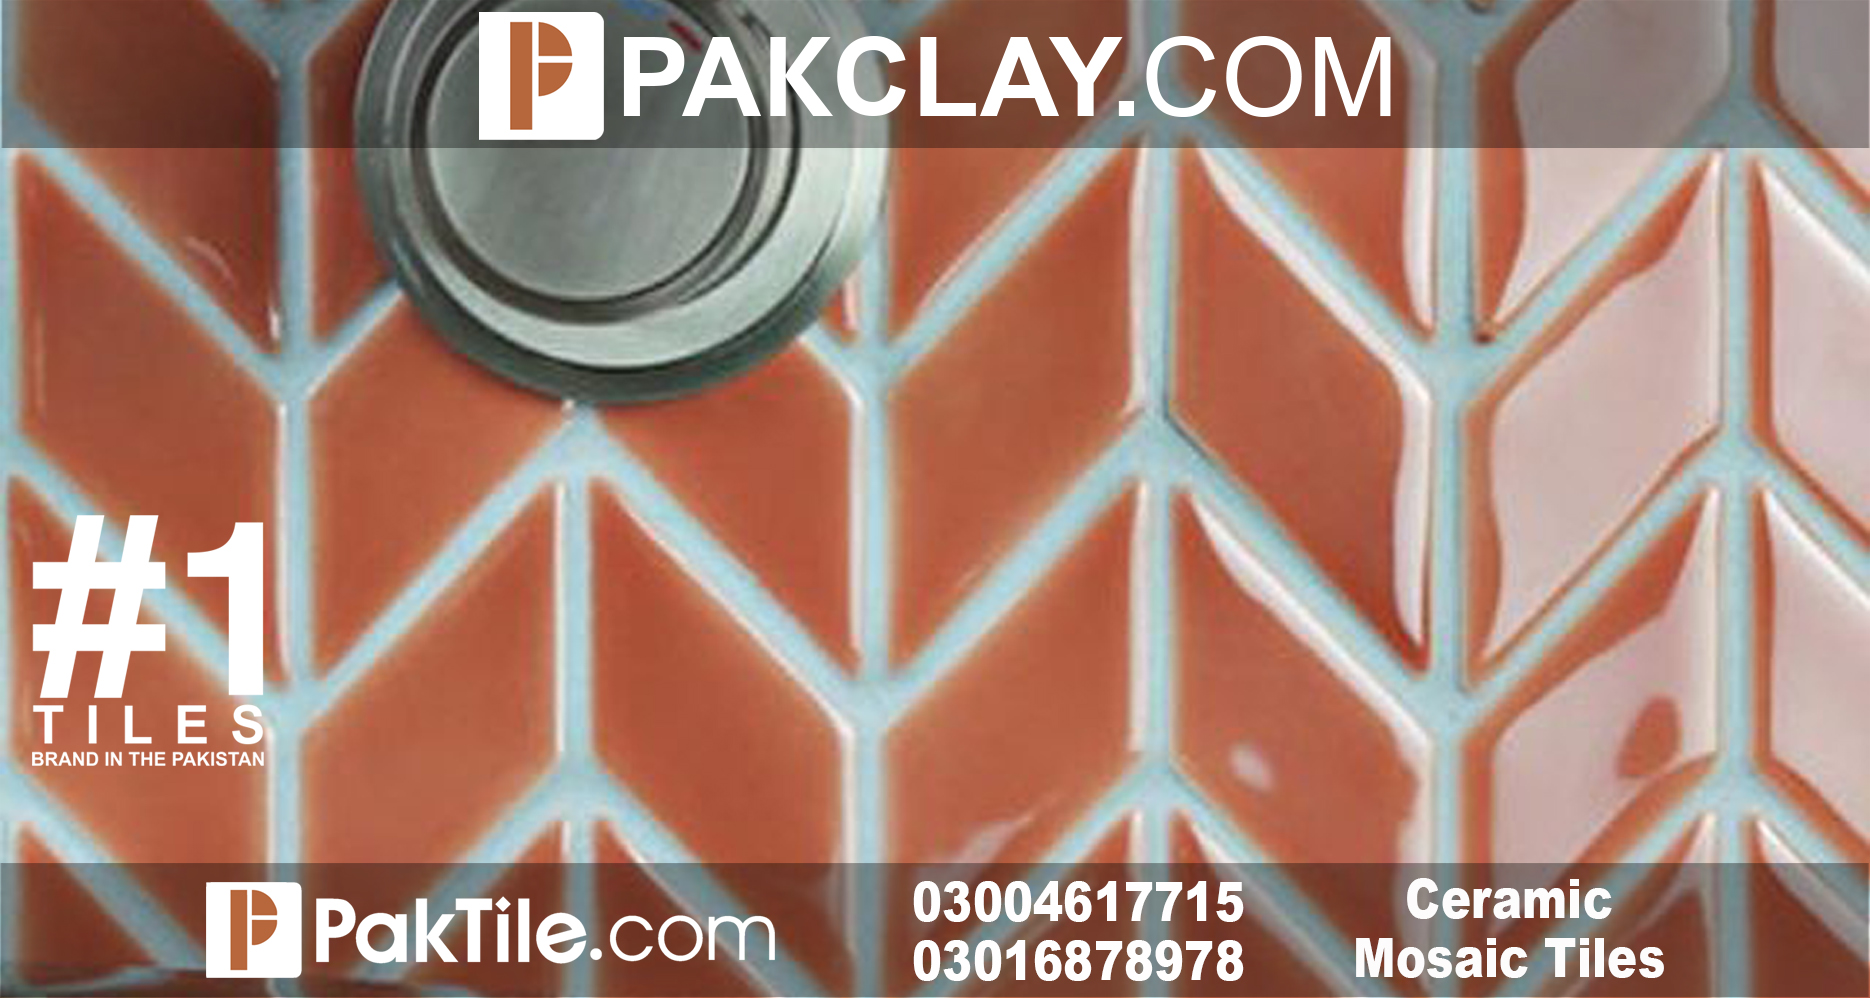 Ceramic Tiles Price in Pakistan